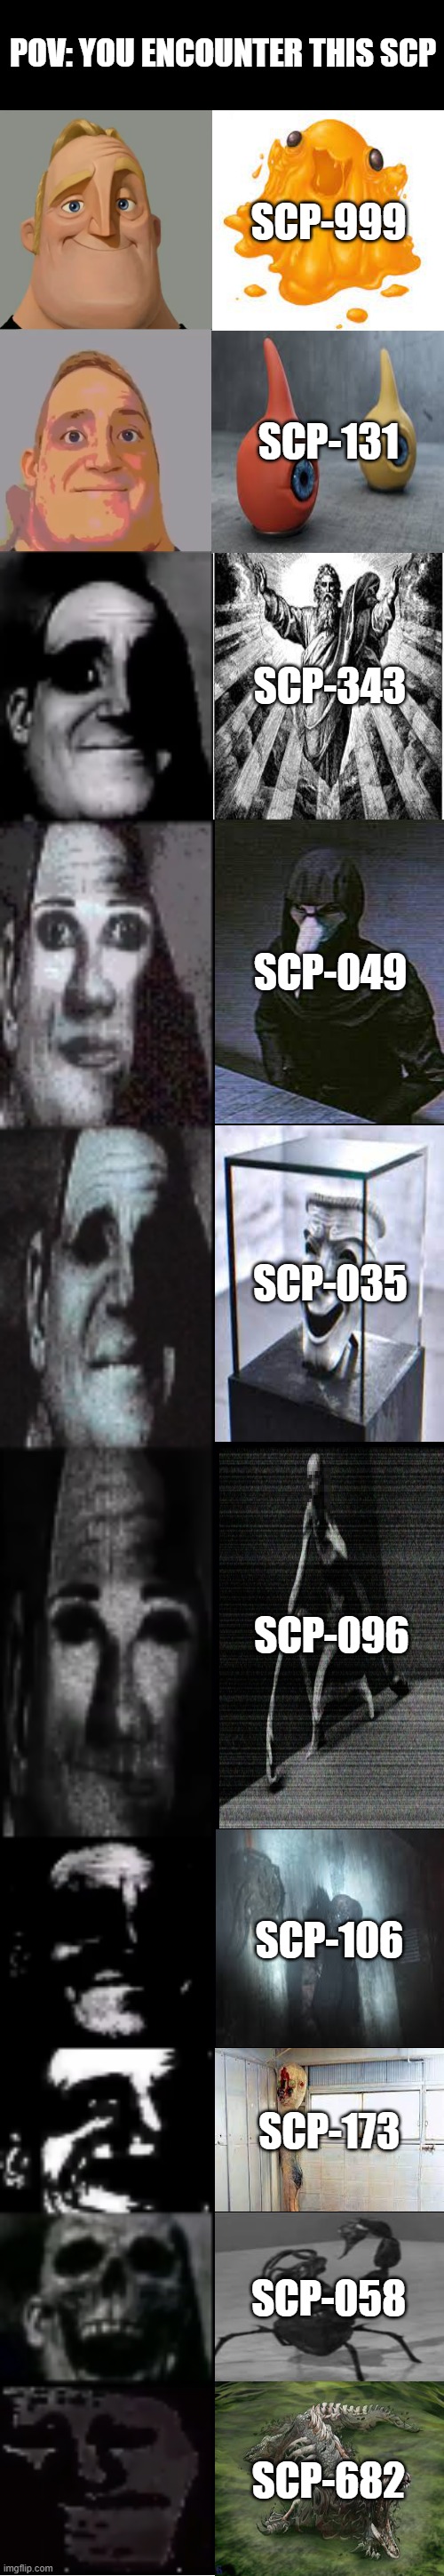 SCP-035 VS SCP-173